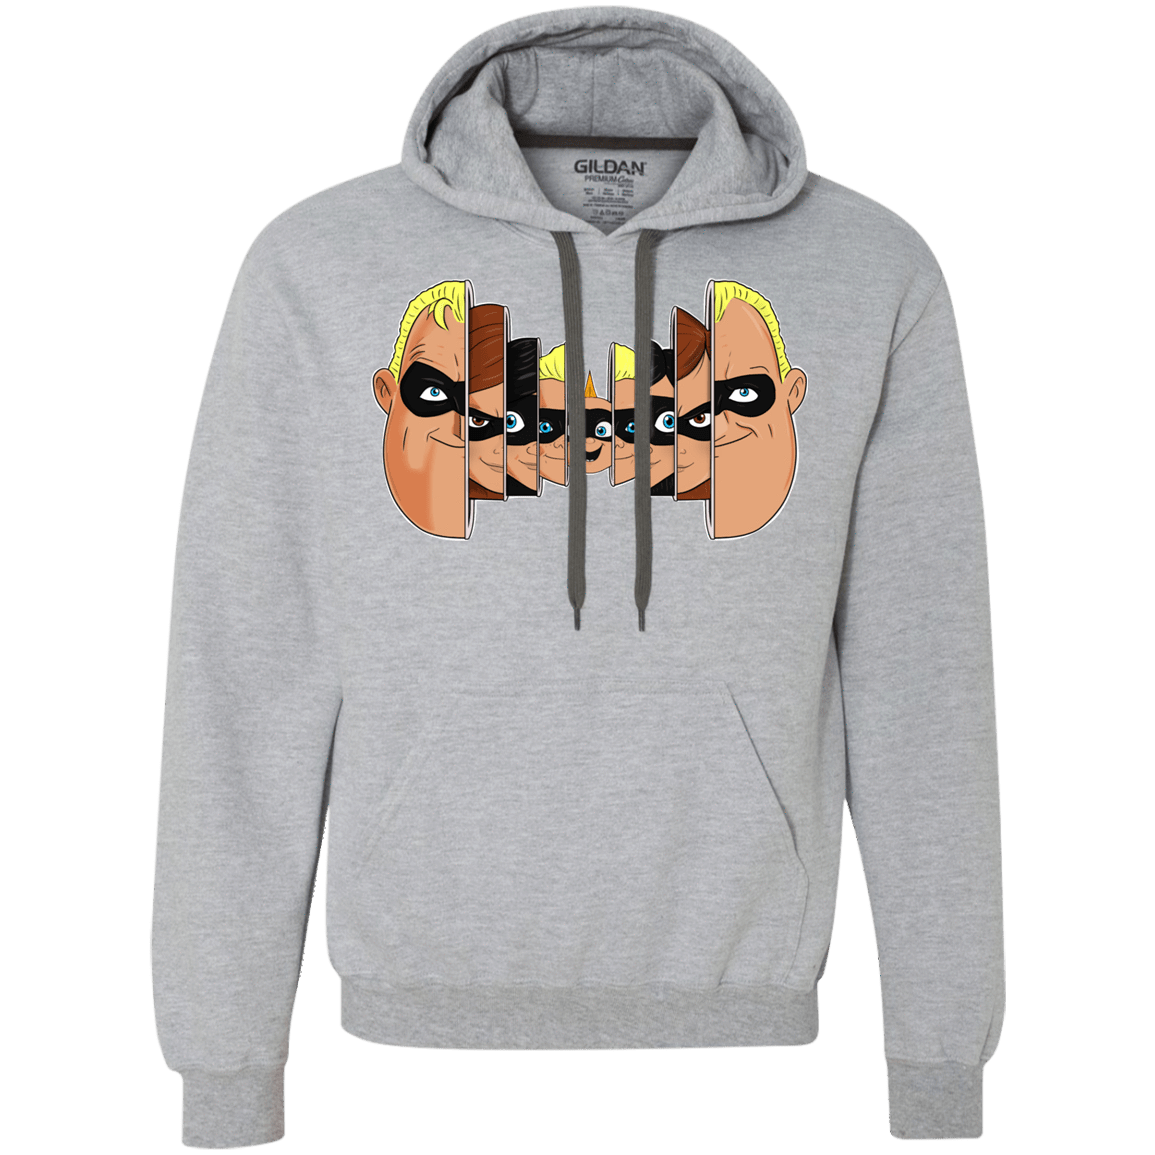 Sweatshirts Sport Grey / L Incredibles Premium Fleece Hoodie